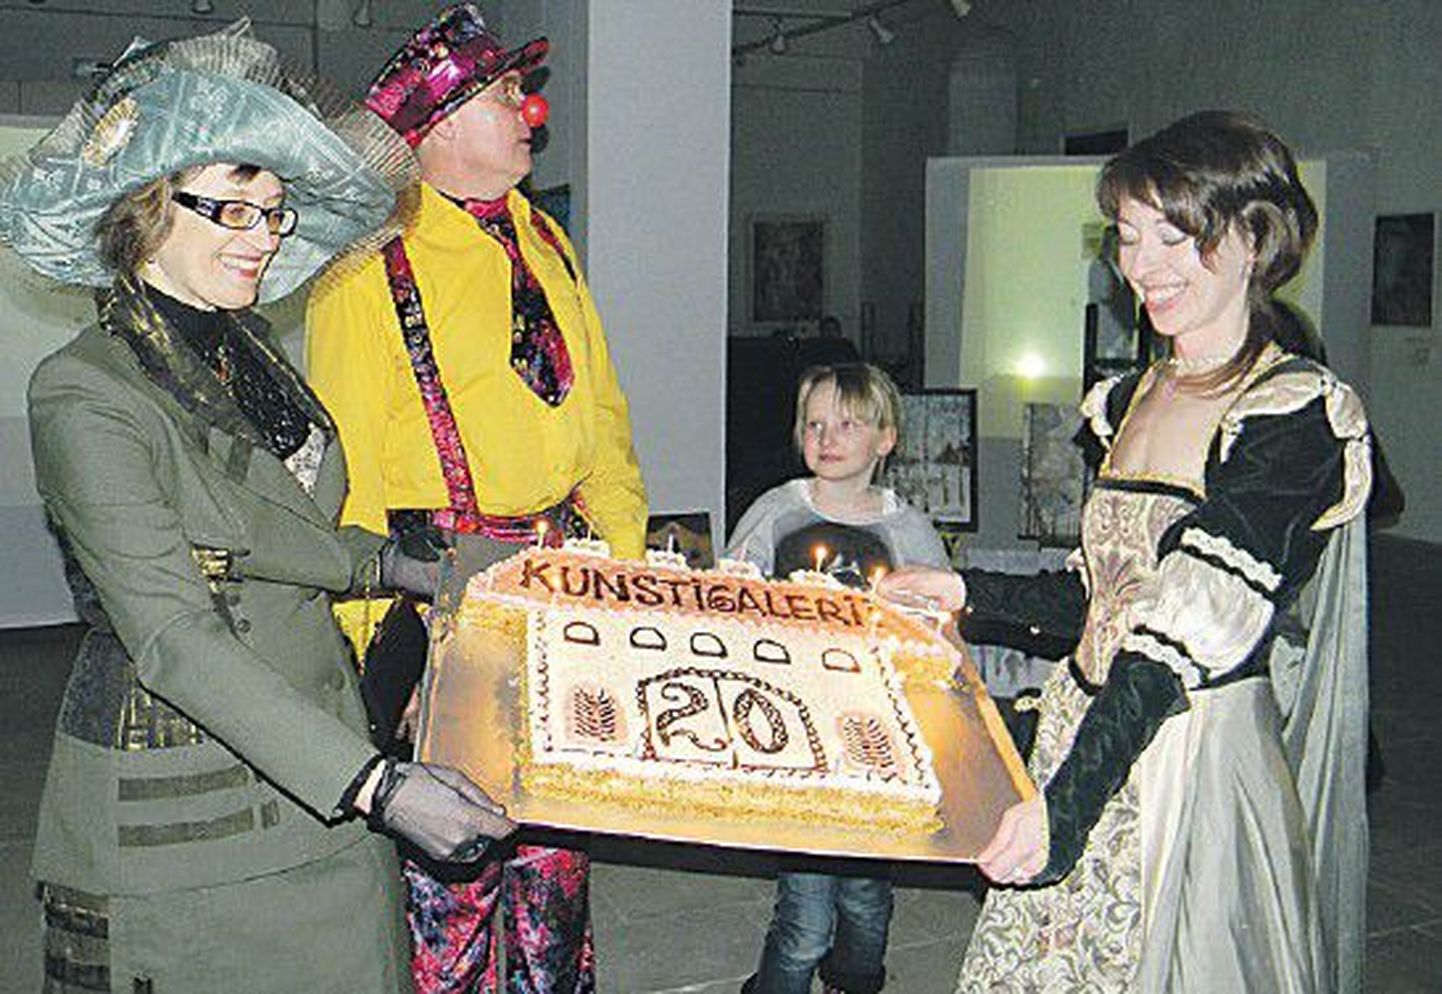 Руководитель программ галереи Елена Сохраннова и художник-методист Екатерина Аверко вынесли юбилейный торт.